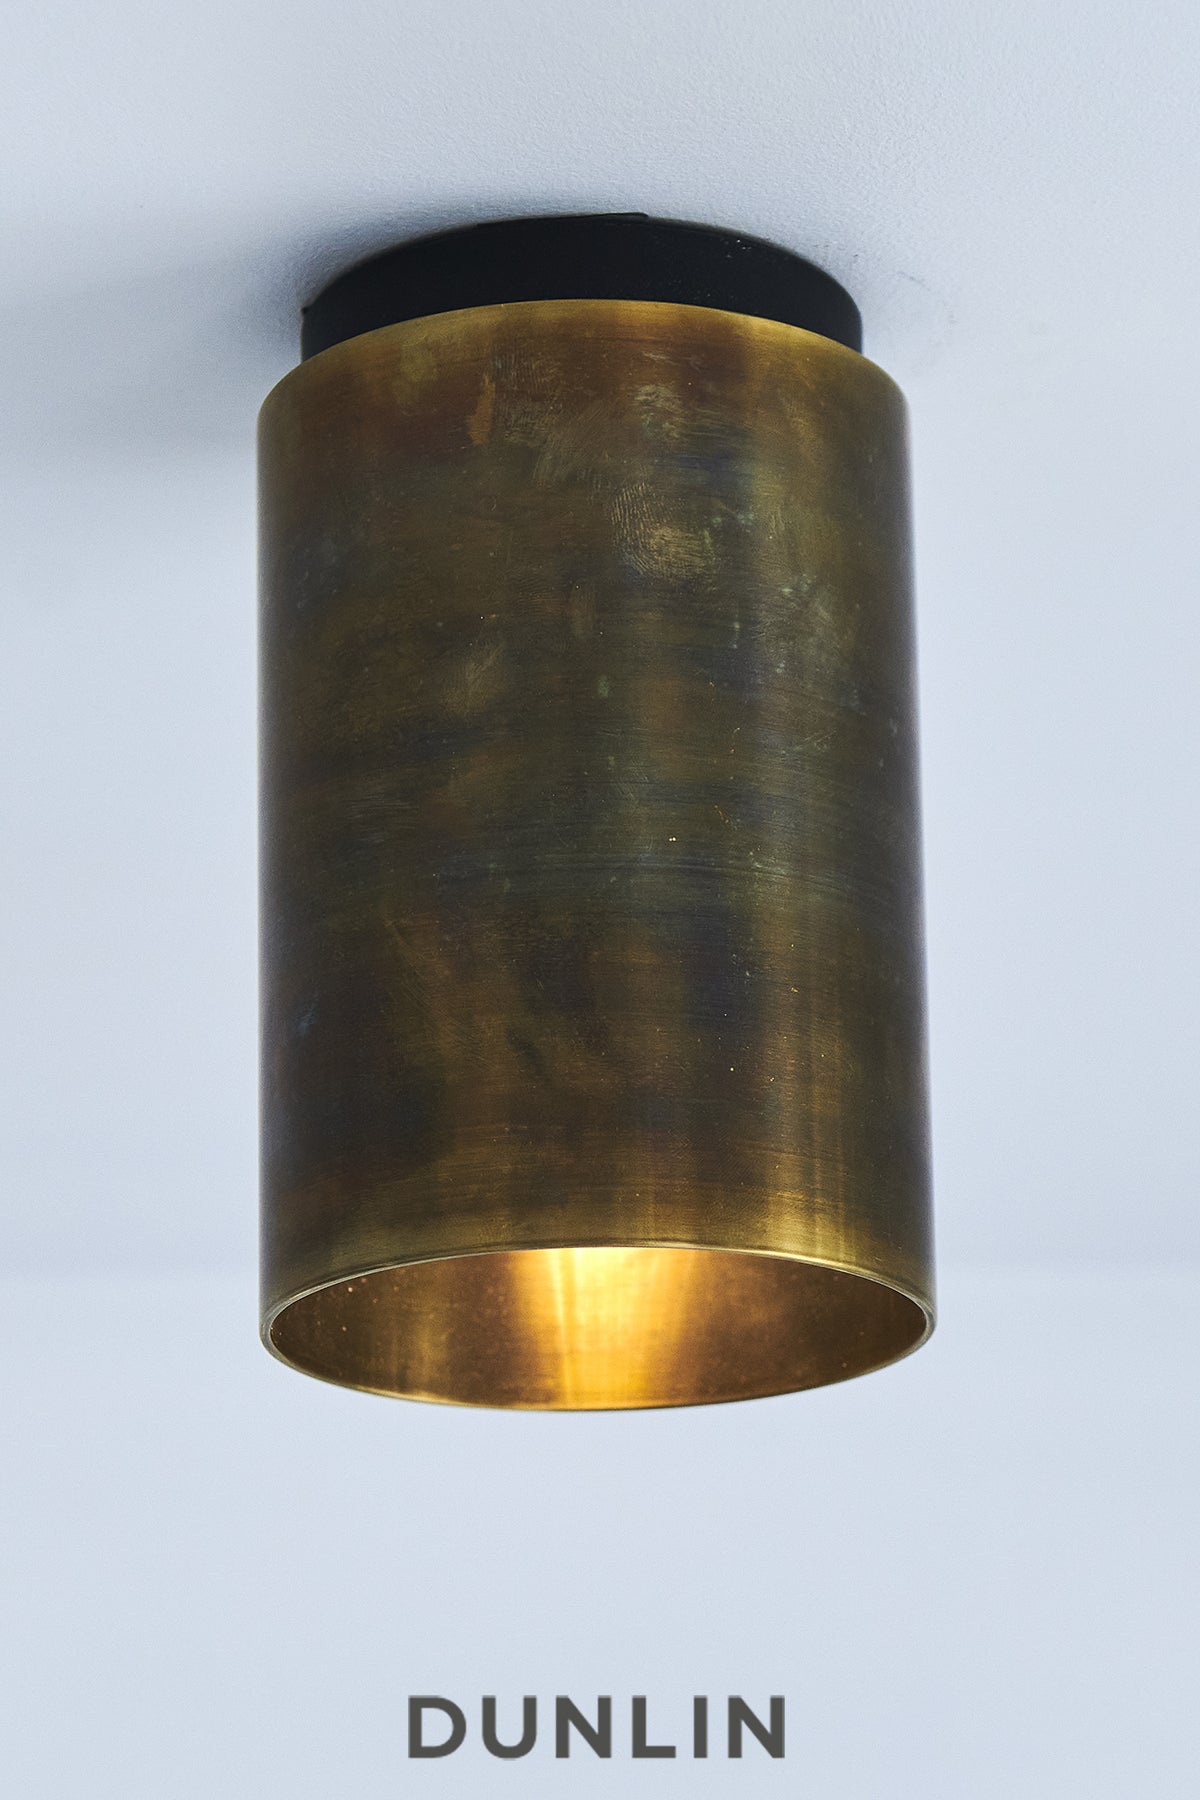 Mott St Spot Light, Noir Blackened Brass, by DUNLIN For Sale at